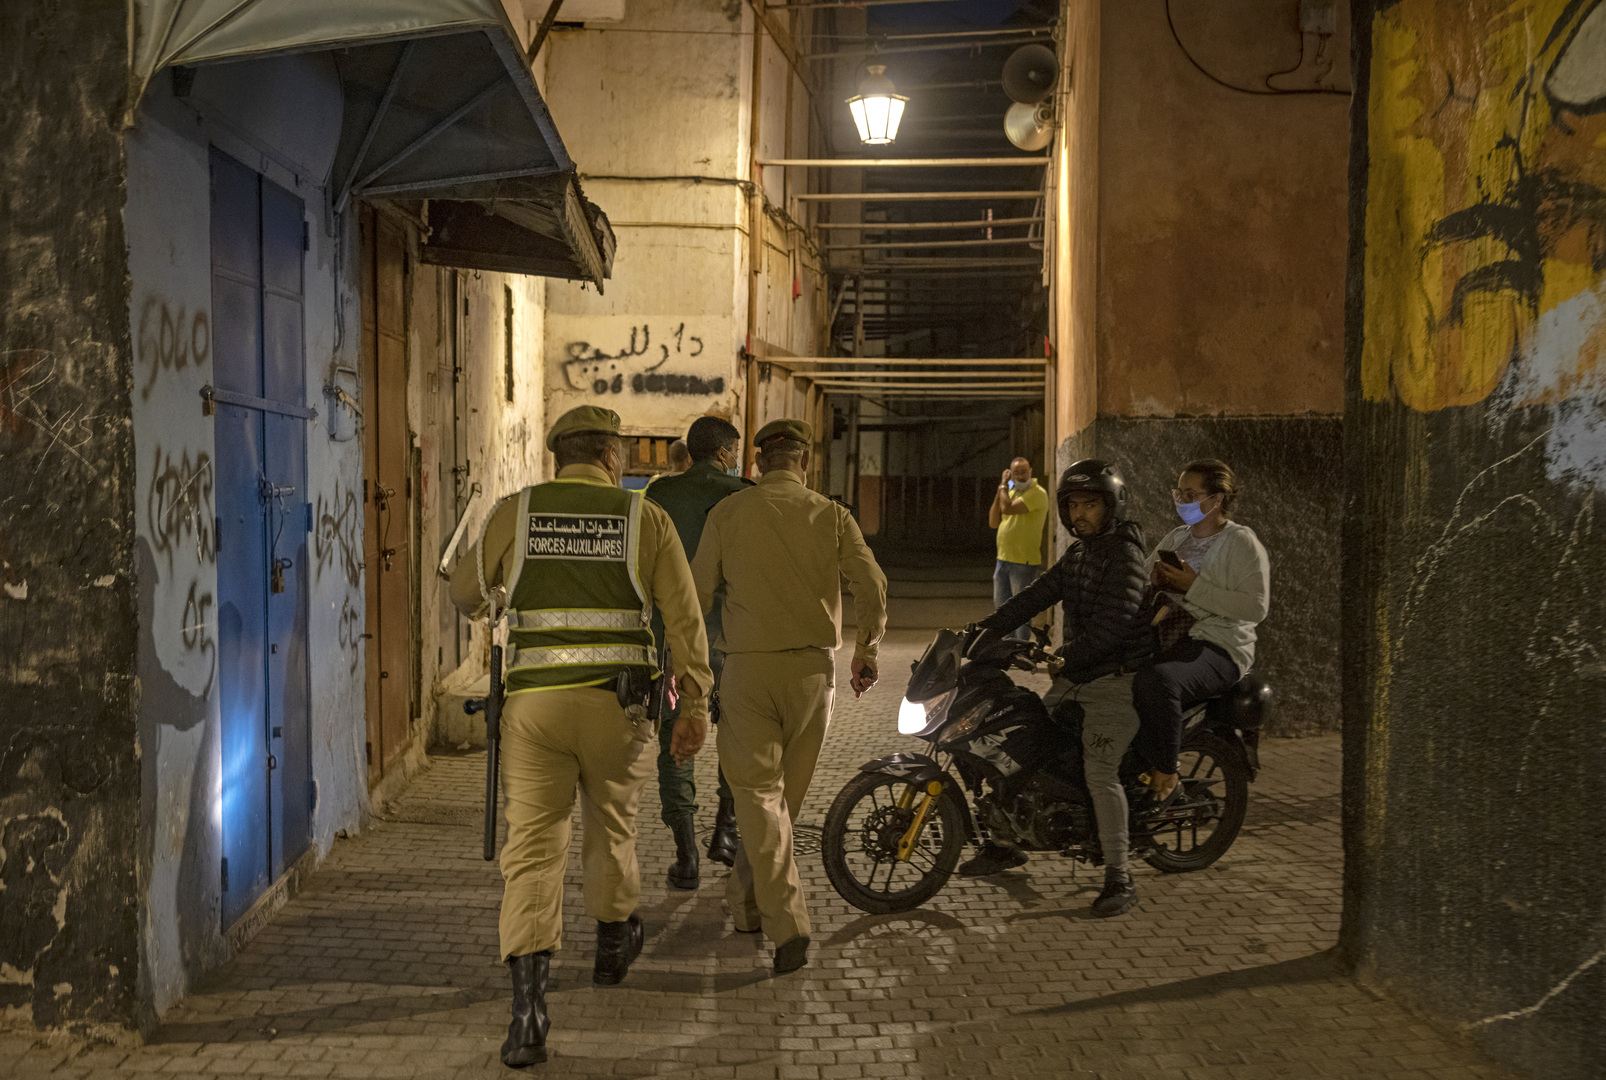 ارتياد الحمامات العامة في المغرب يشهد تراجعا كبيرا